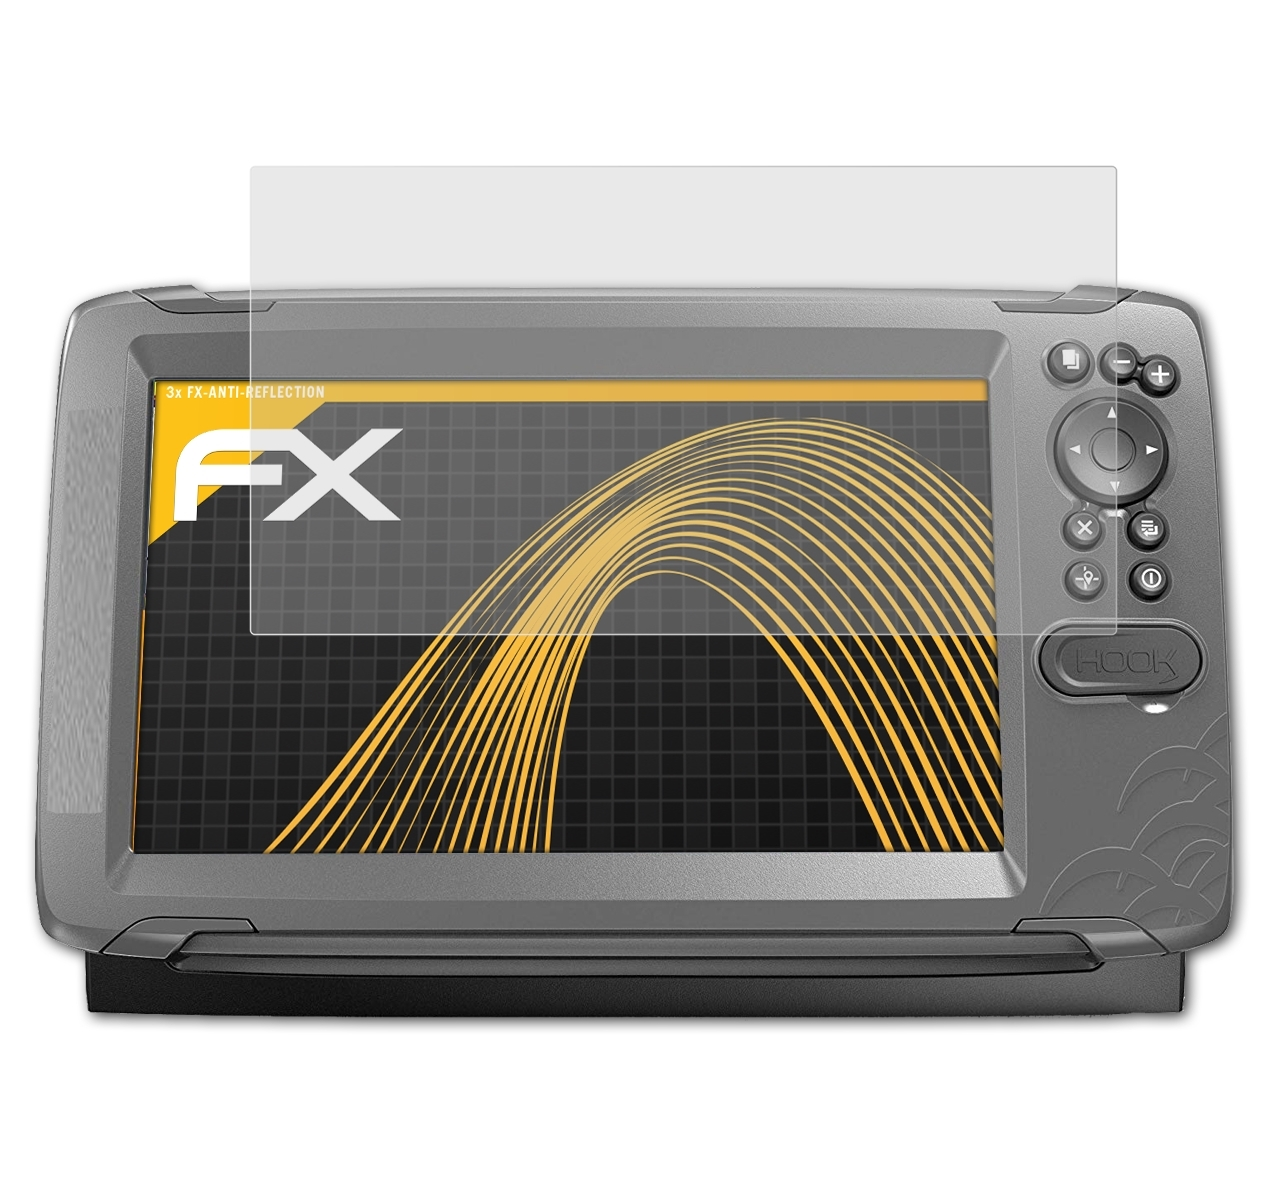 ATFOLIX 3x FX-Antireflex Displayschutz(für Lowrance Hook2 9)